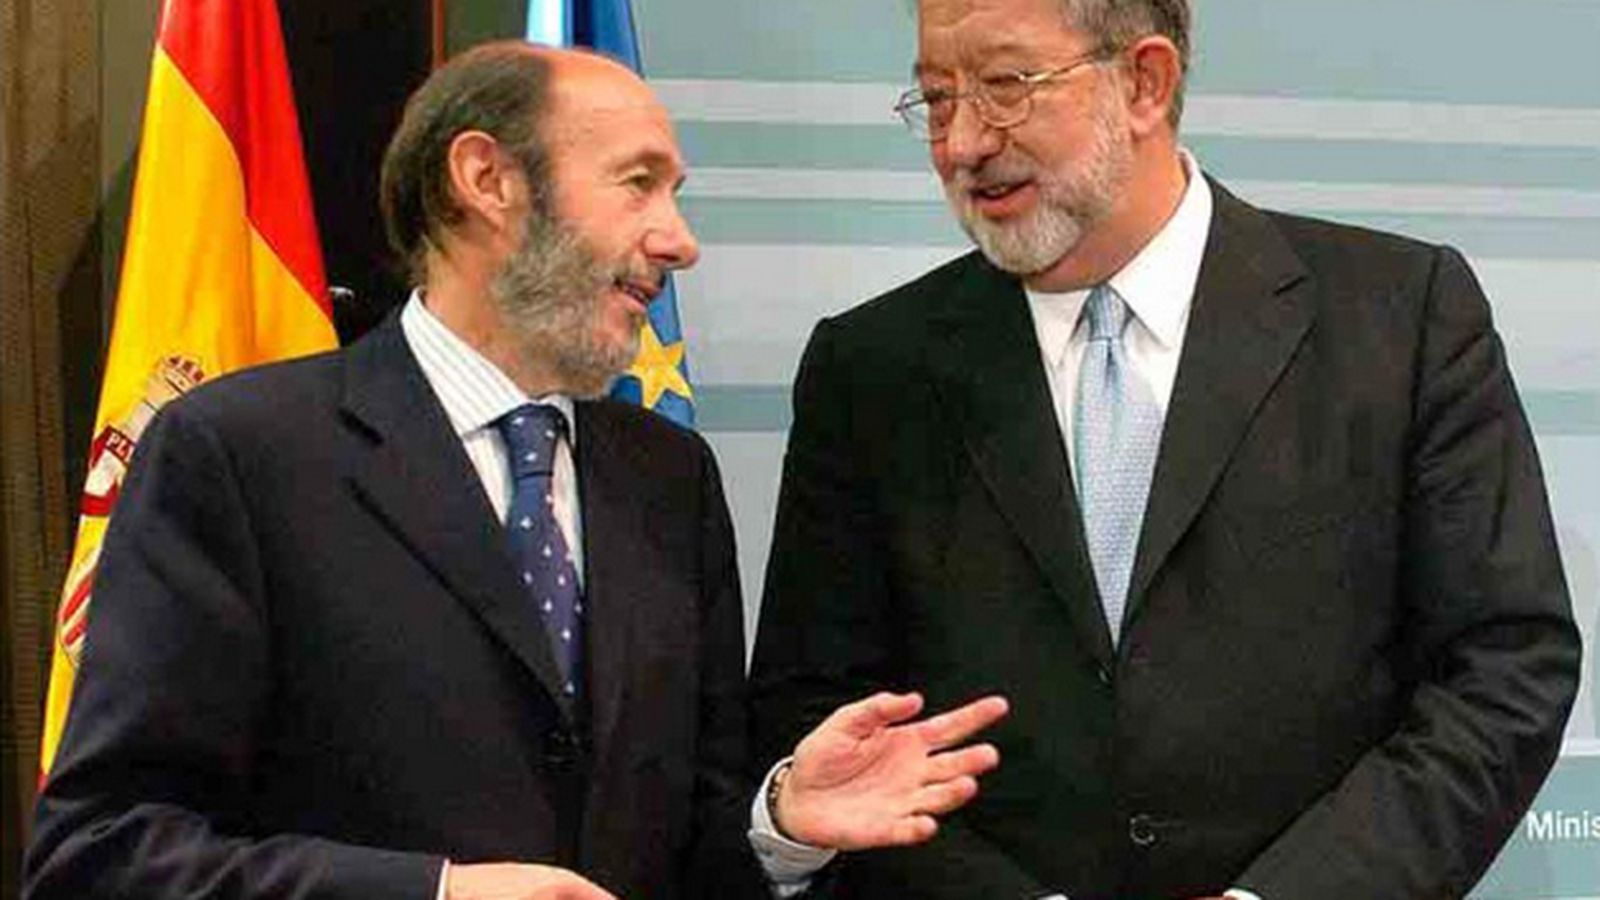 Foto: El exministro del Interior Alfredo Pérez Rubalcaba y el exdirector de Infraestructuras Luis Luengo. (Ministerio del Interior)